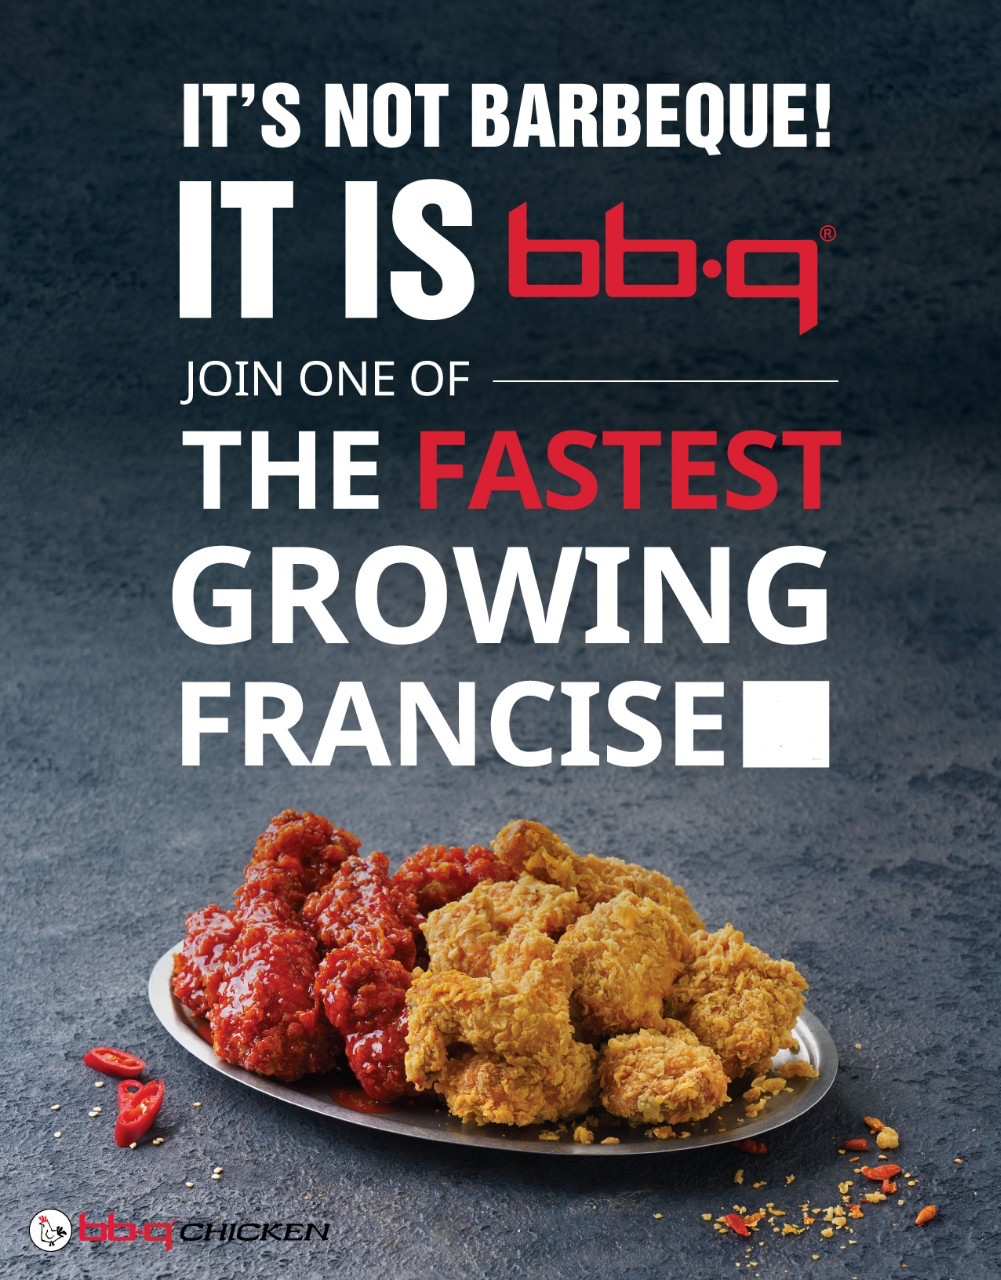 BBQ가 미국 내 대형 프랜차이즈 기업으로 거듭날 수 있는 K-치킨 브랜드로 소개됐다./사진제공=BBQ